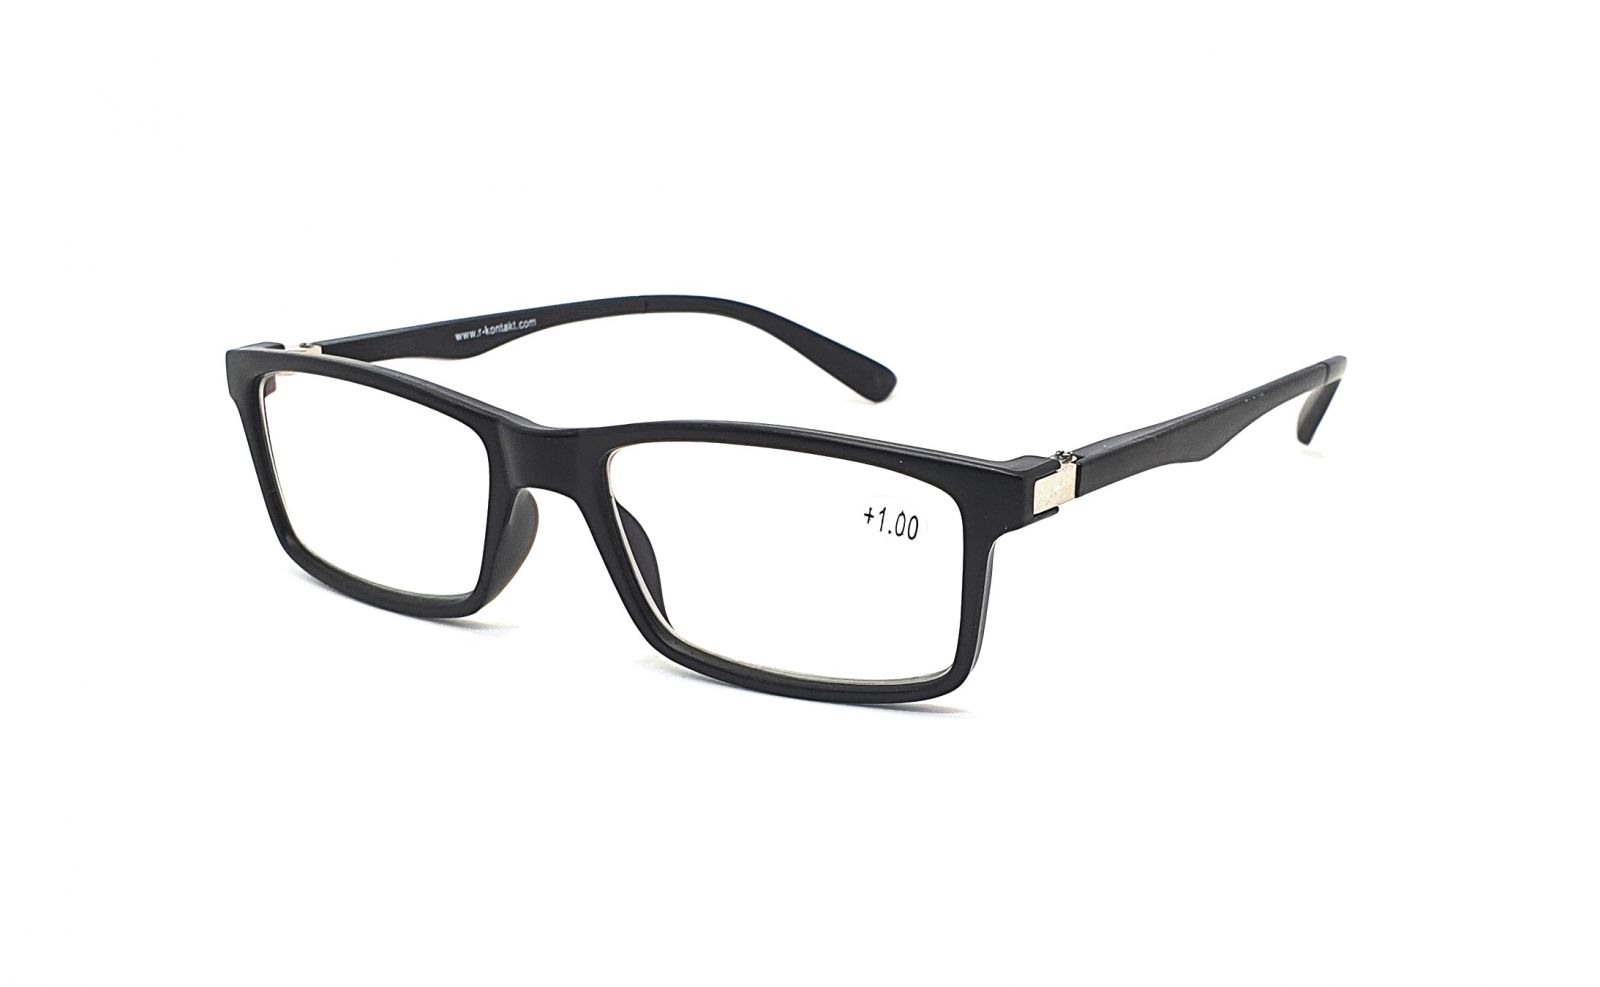 Samozabarvovací dioptrické brýle V3060 / +2,50 black flex